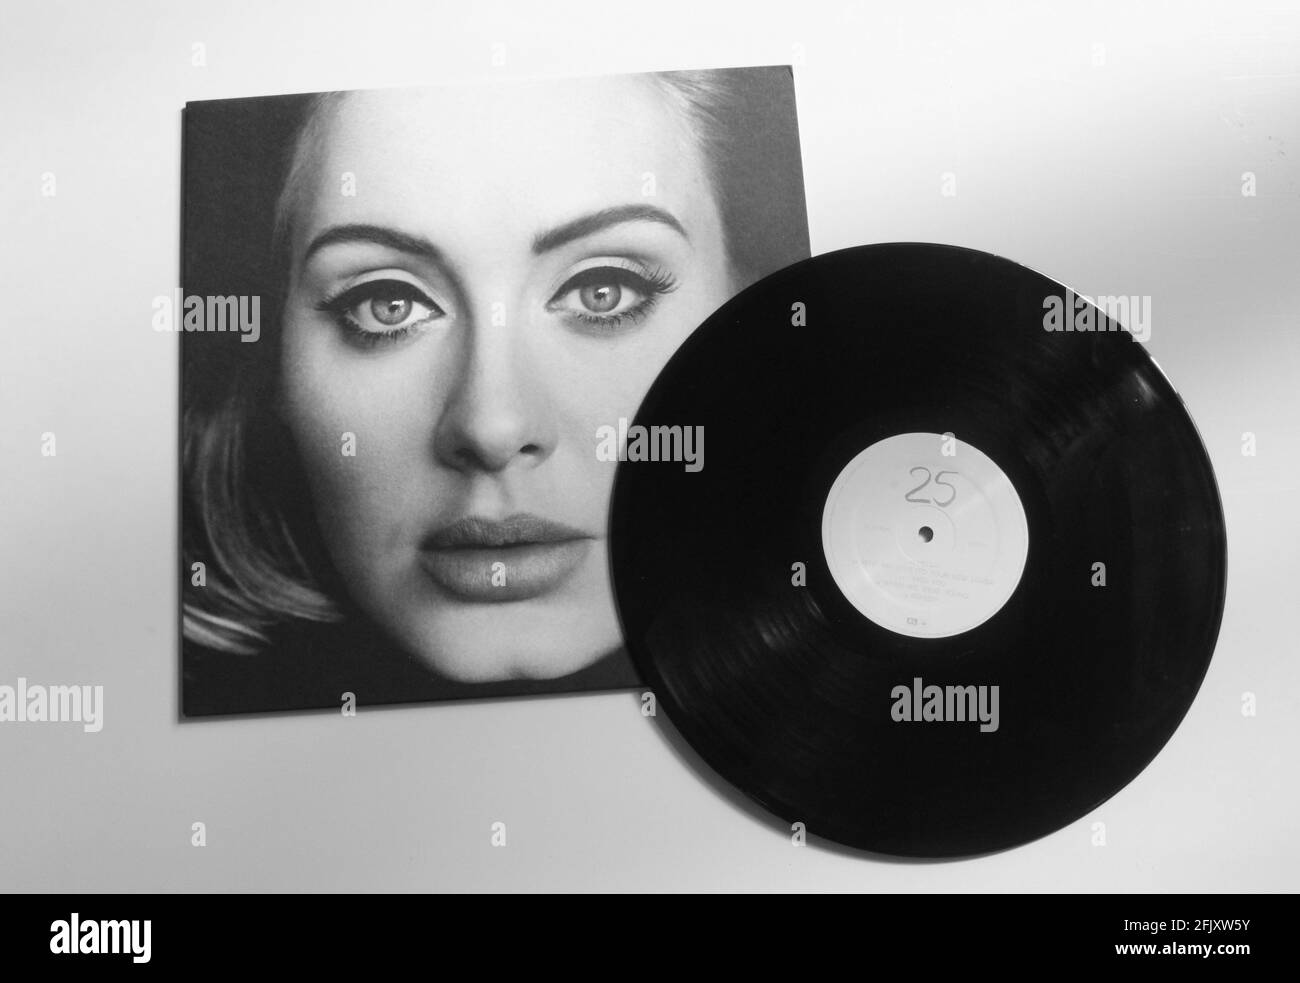 Adele music album on vinyl record LP disc. This album is called 25